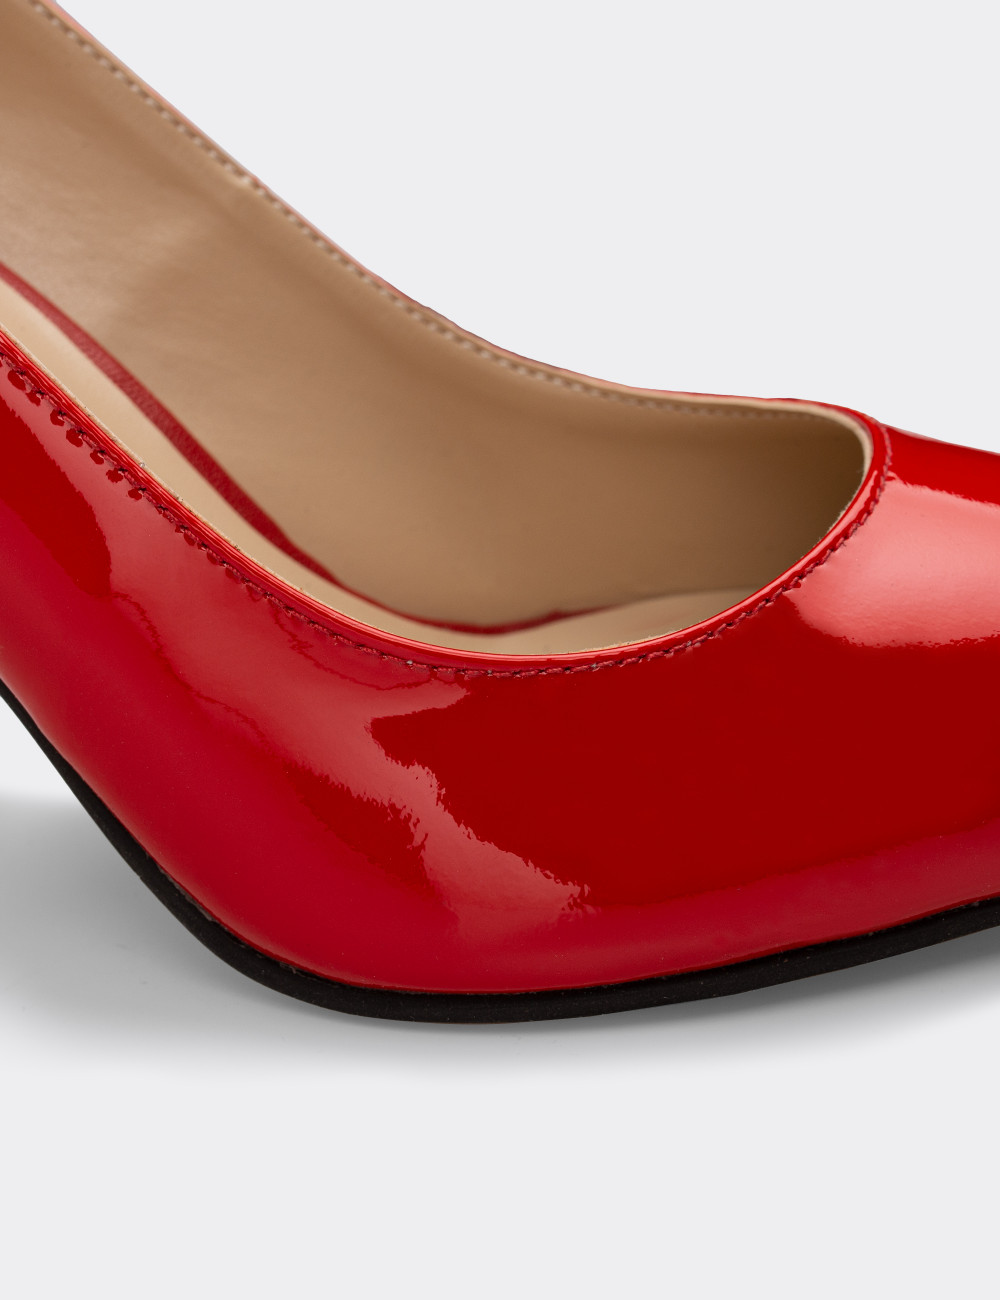 Kırmızı Topuklu Kadın Ayakkabı - 02029ZKRMM04